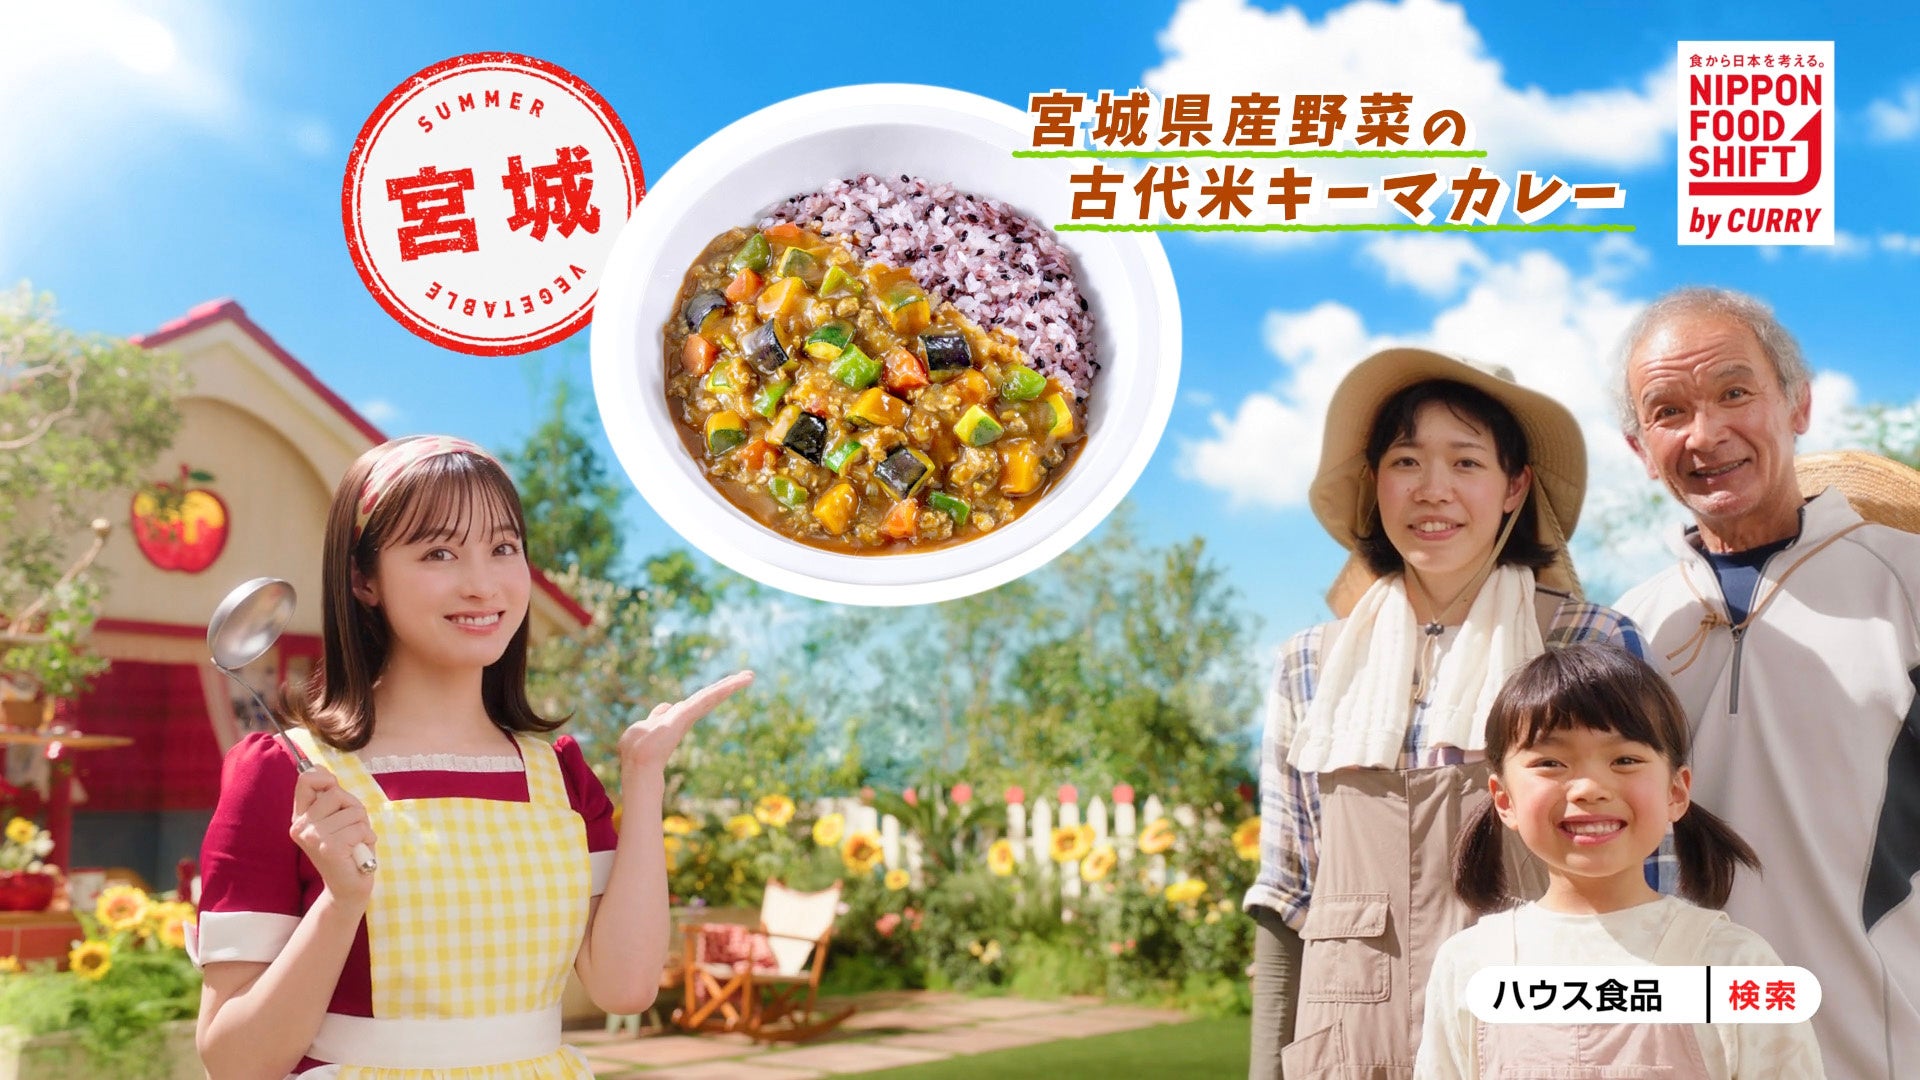 ハウス食品×農林水産省 『ニッポンフードシフト by CURRY』始まります！